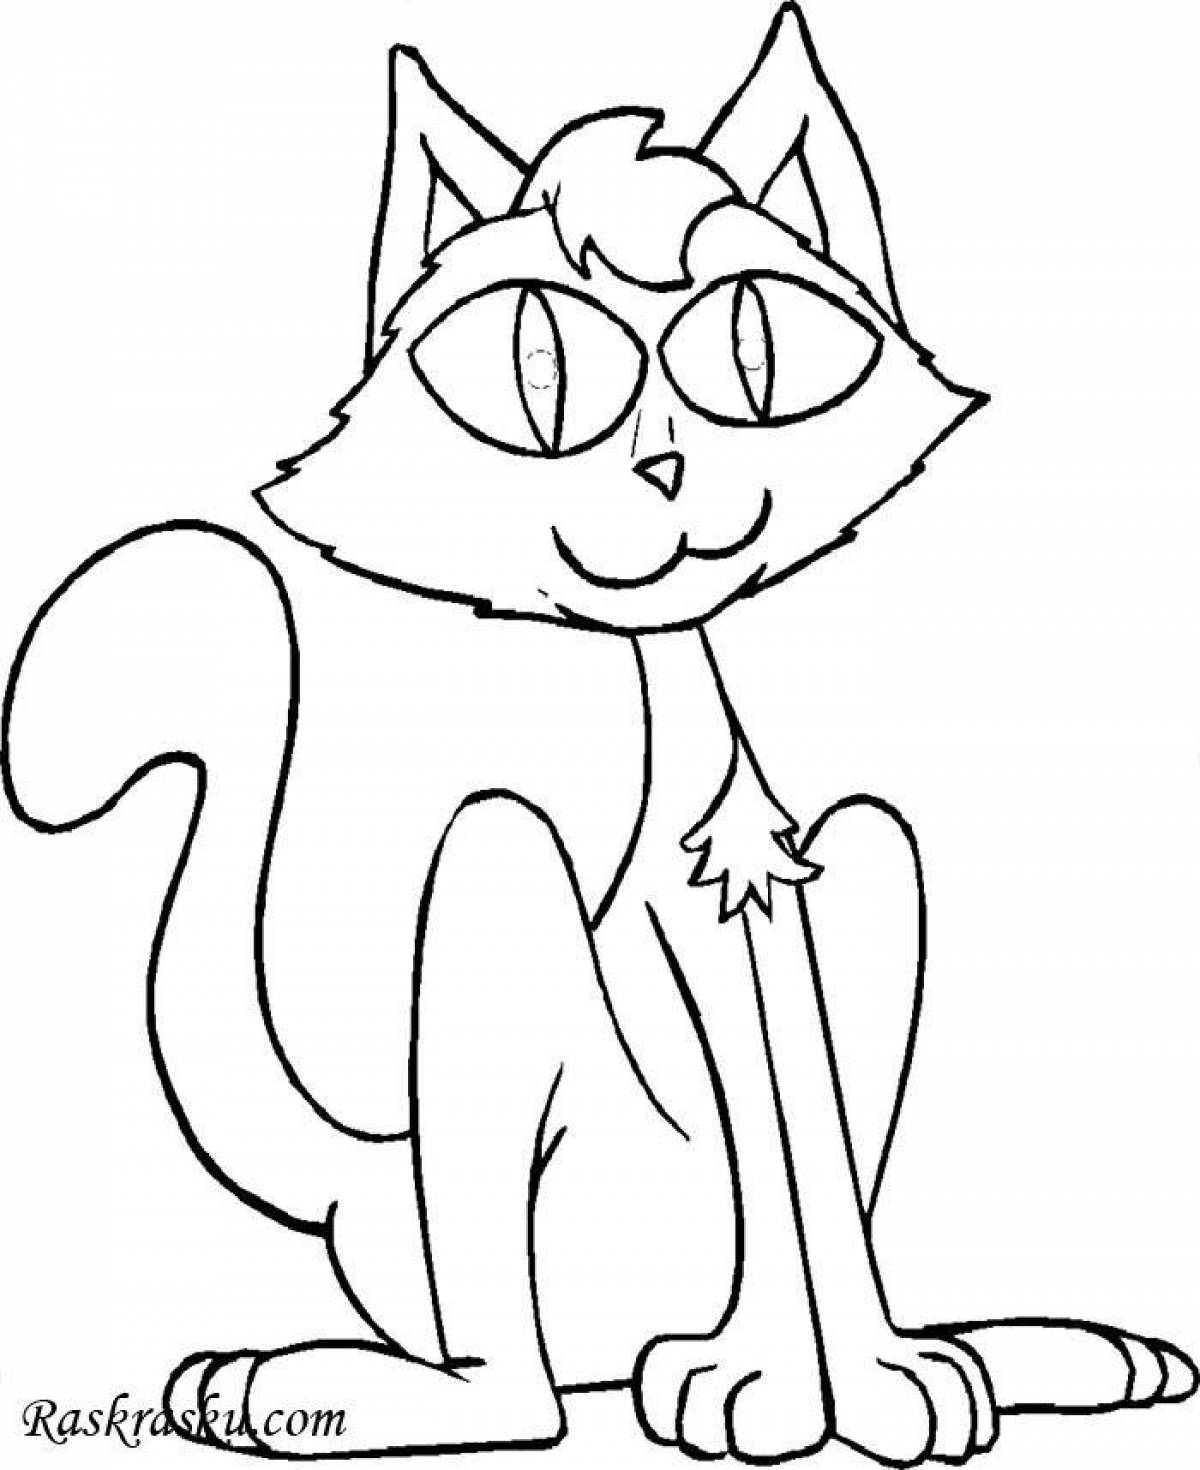 Live coloring cartoon cat